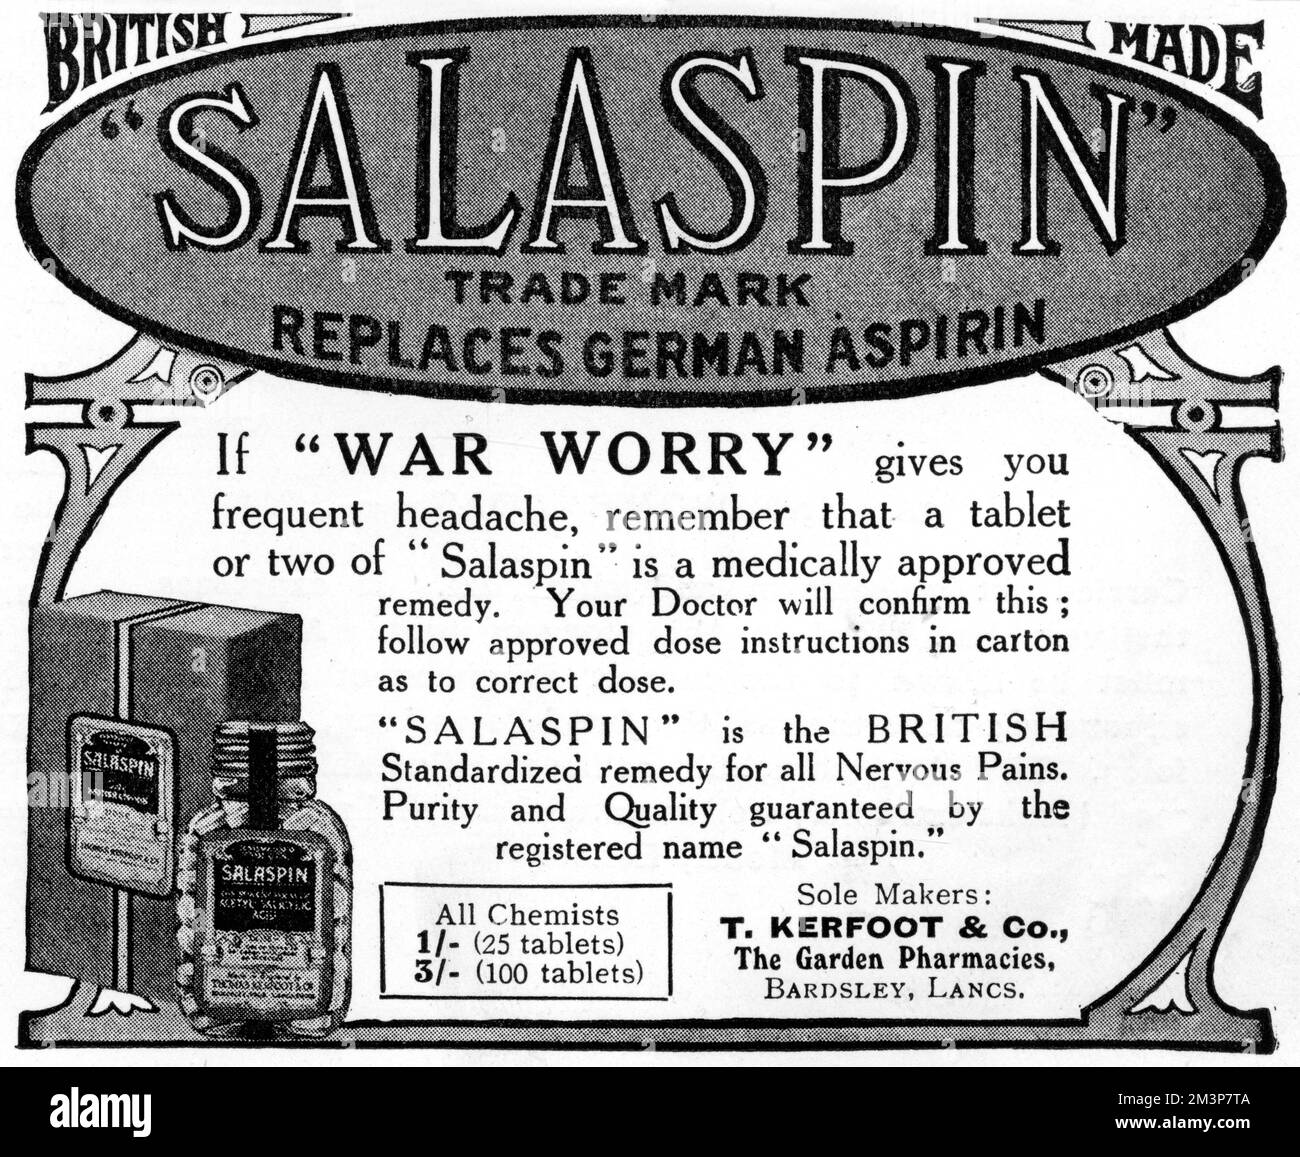 Une publicité pour SalaPIN, un Britannique a fait un remède contre les maux de tête, avec un ou deux comprimés capables de soulager les maux de tête causés par l'inquiétude de guerre. La publicité indique clairement qu'elle remplace l'aspirine allemande. Date: 1917 Banque D'Images